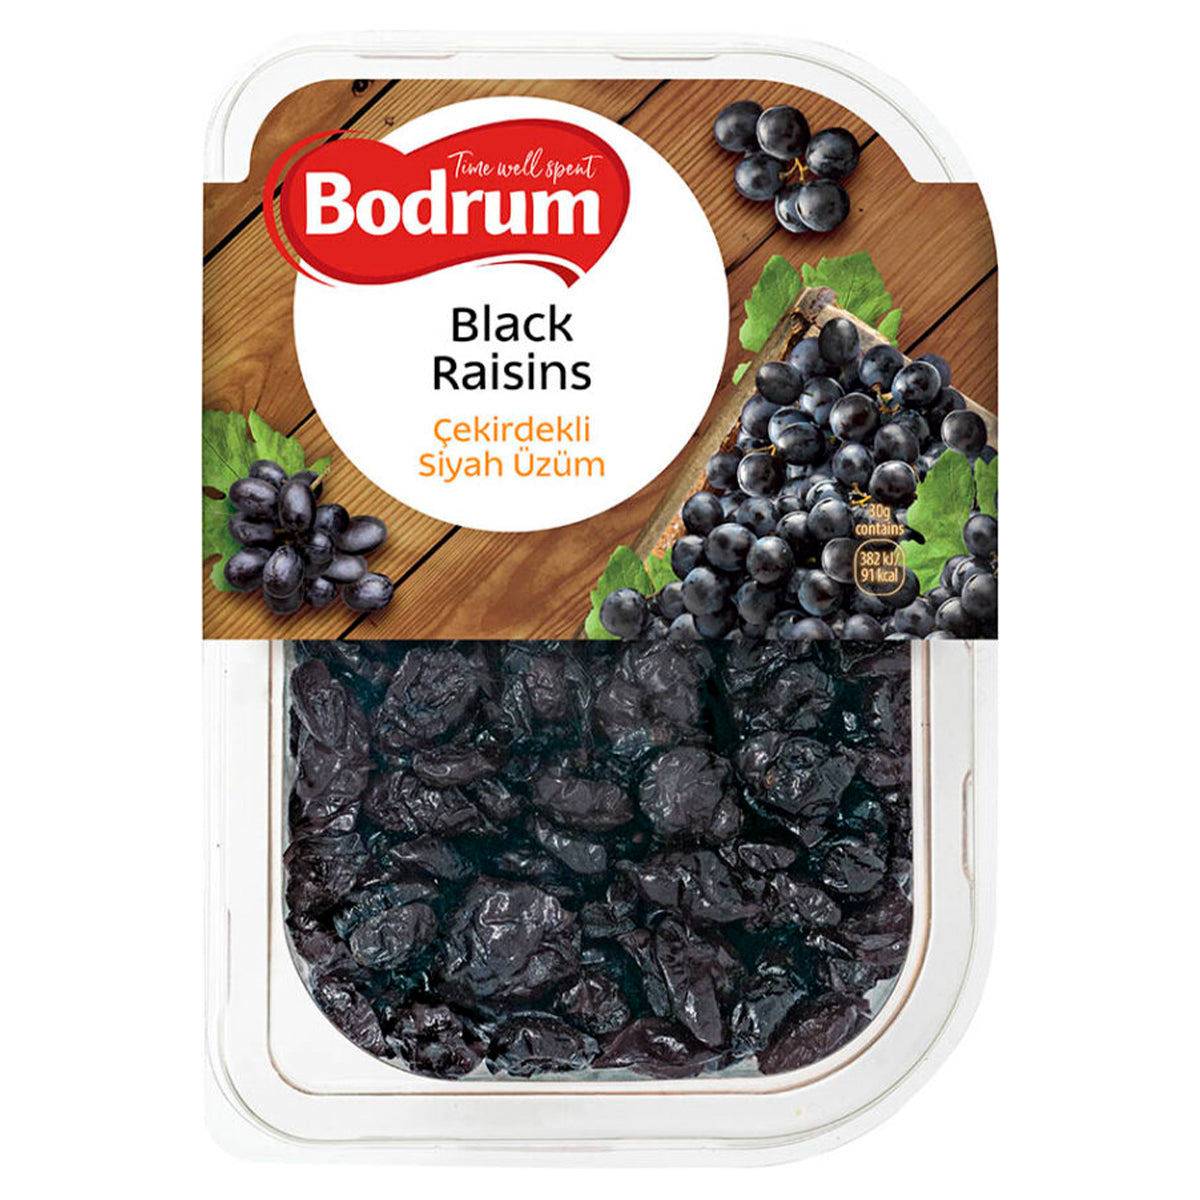 Bodrum - Black Raisins - 250g in a plastic container.